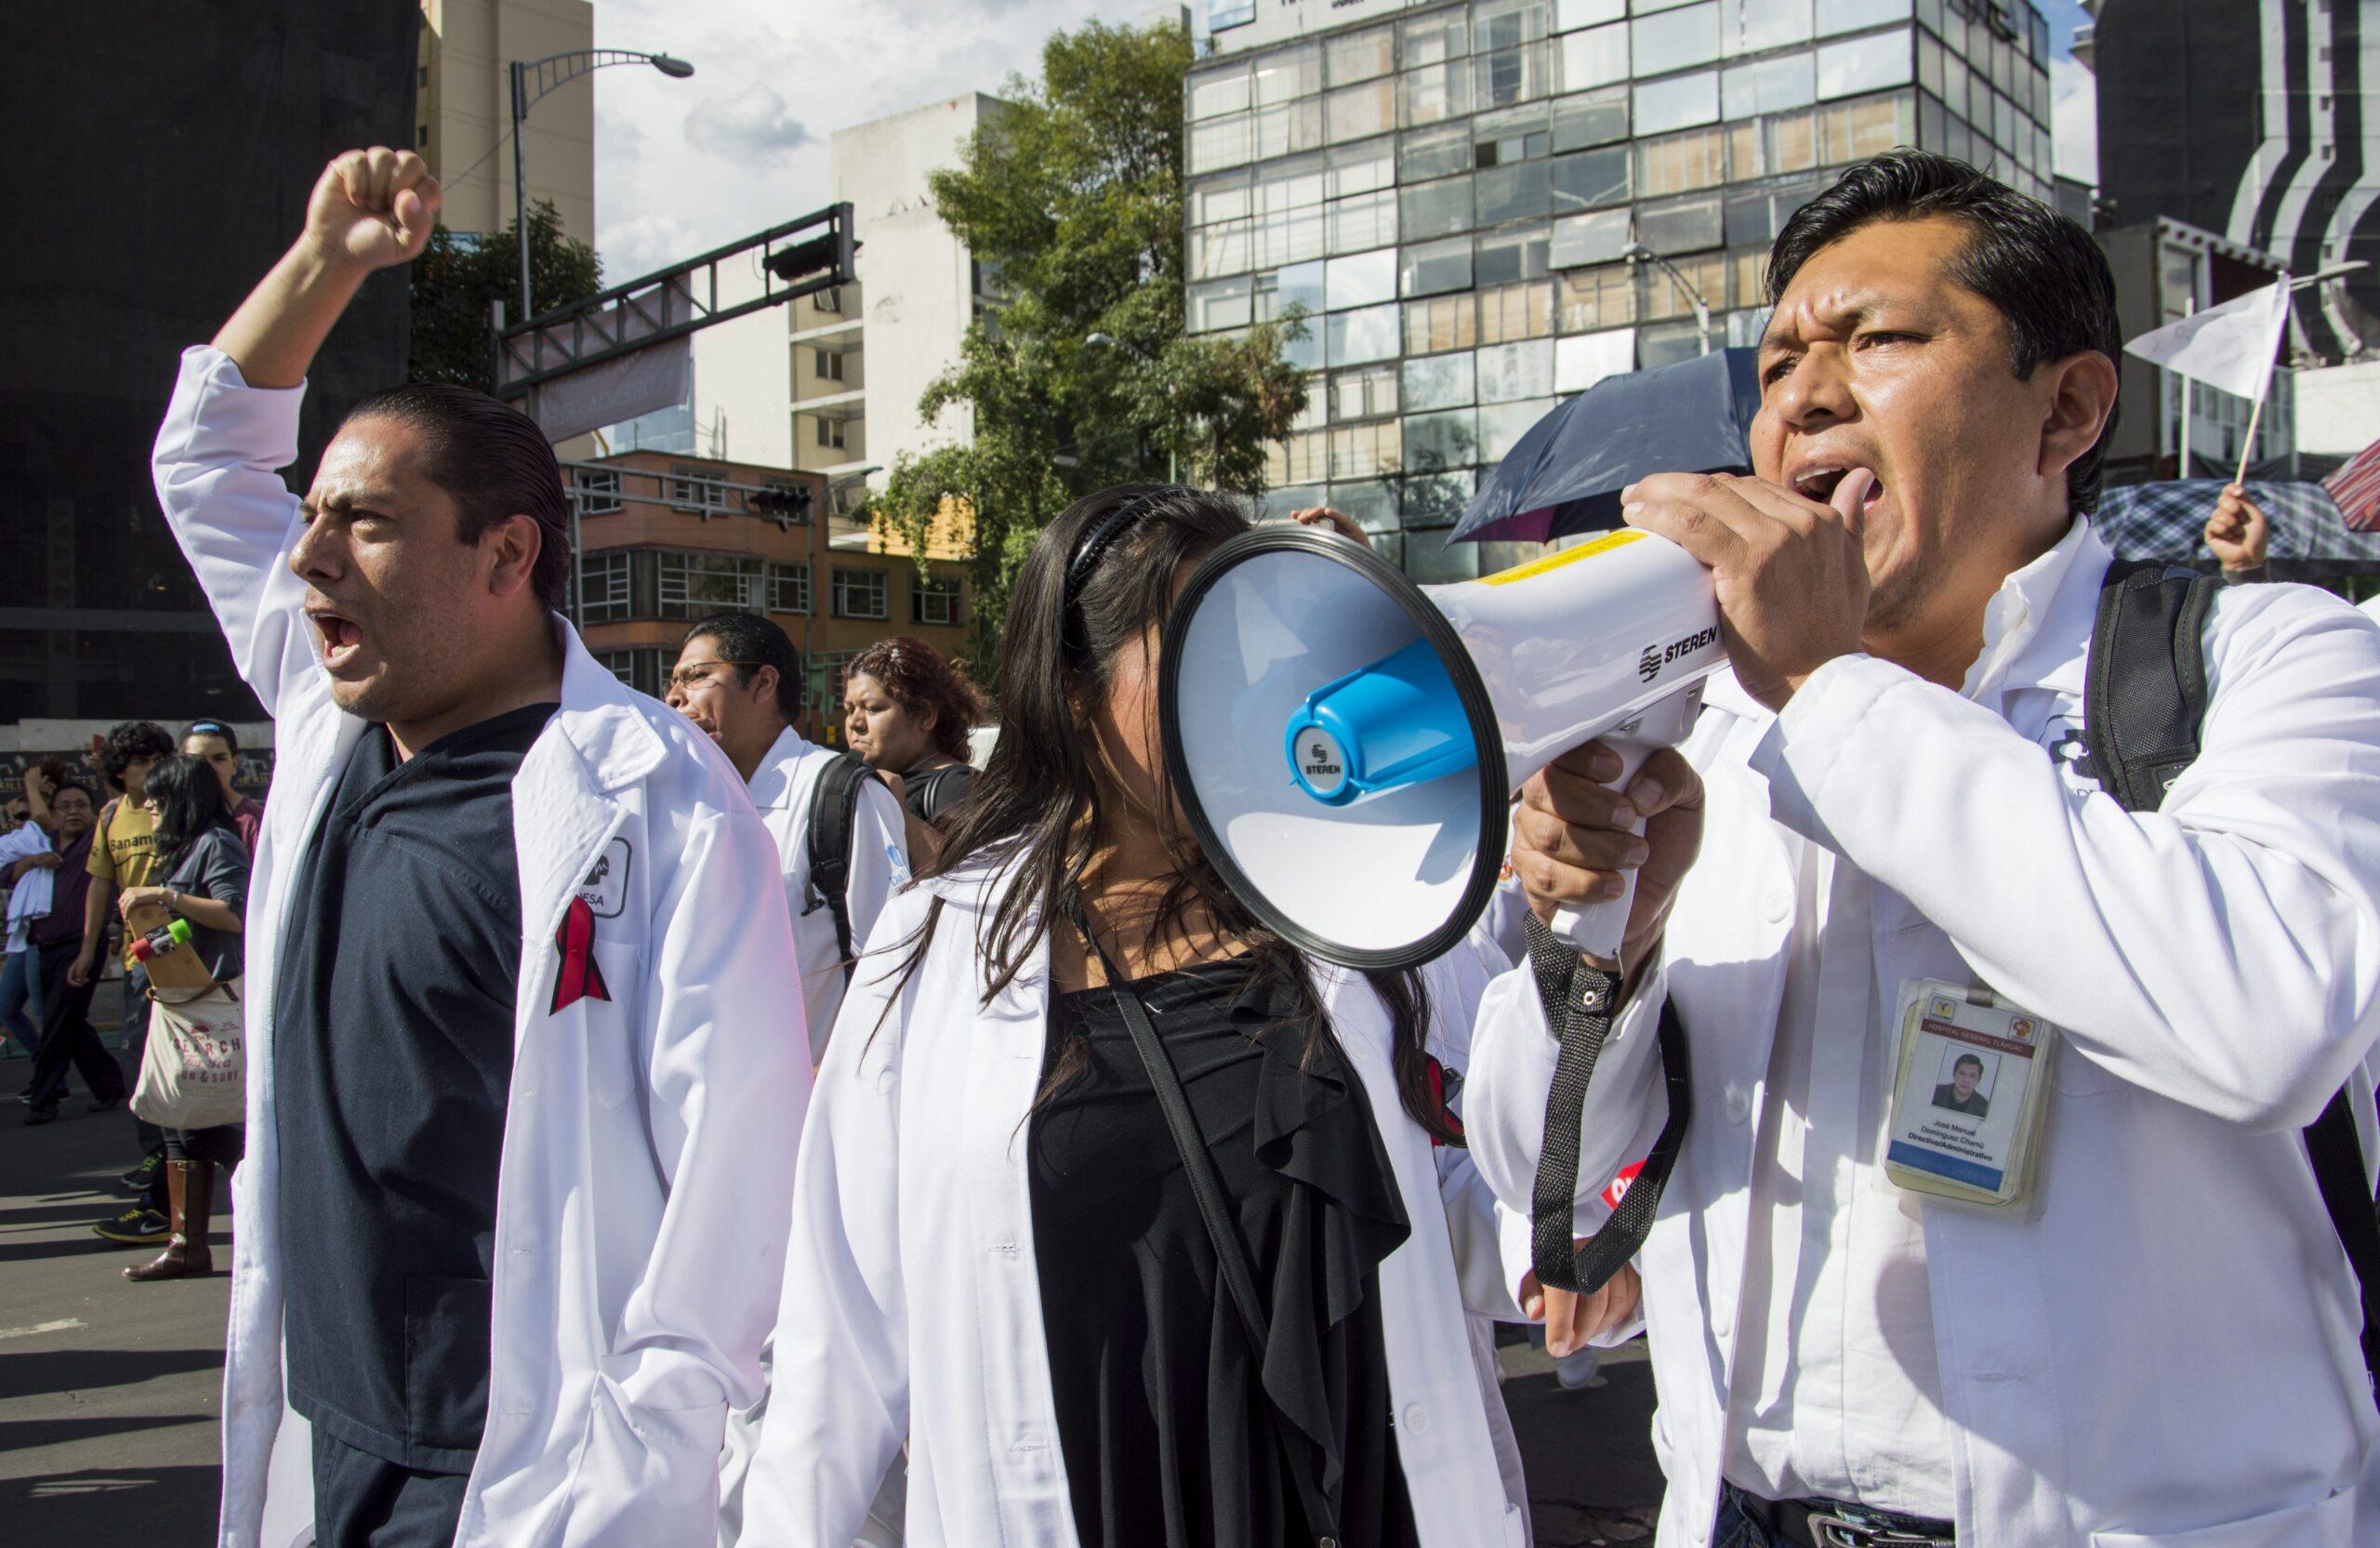 No se busca privatizar la salud, dice Narro tras marcha de Yosoymédico17